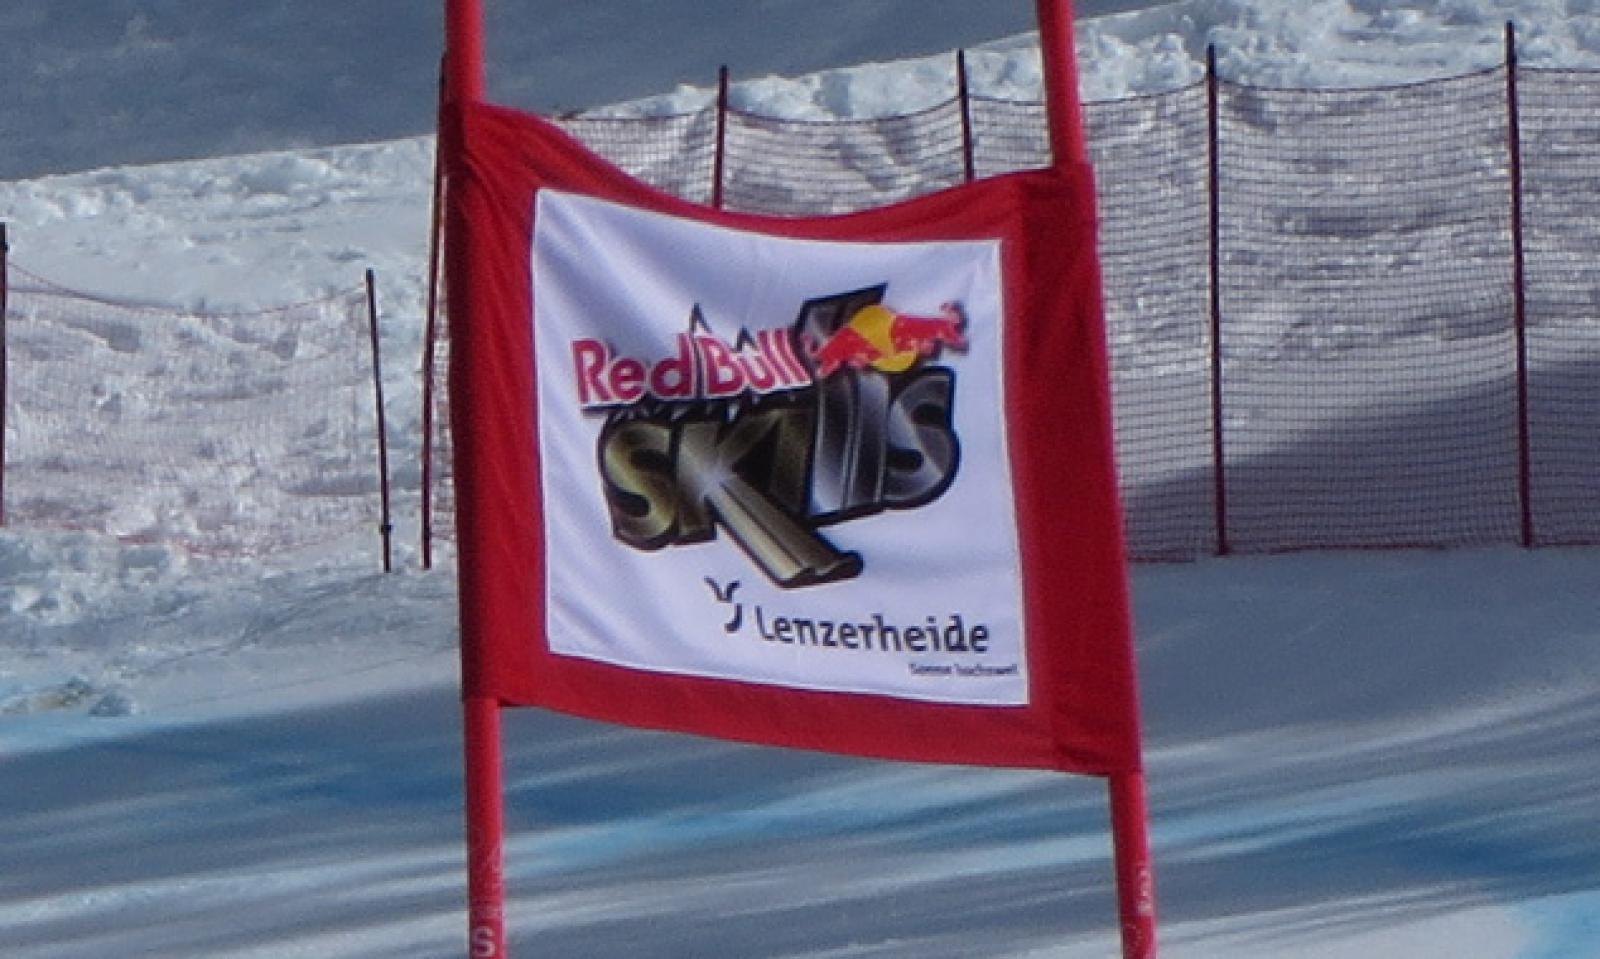 Red Bull Skills Event Lenzerheide